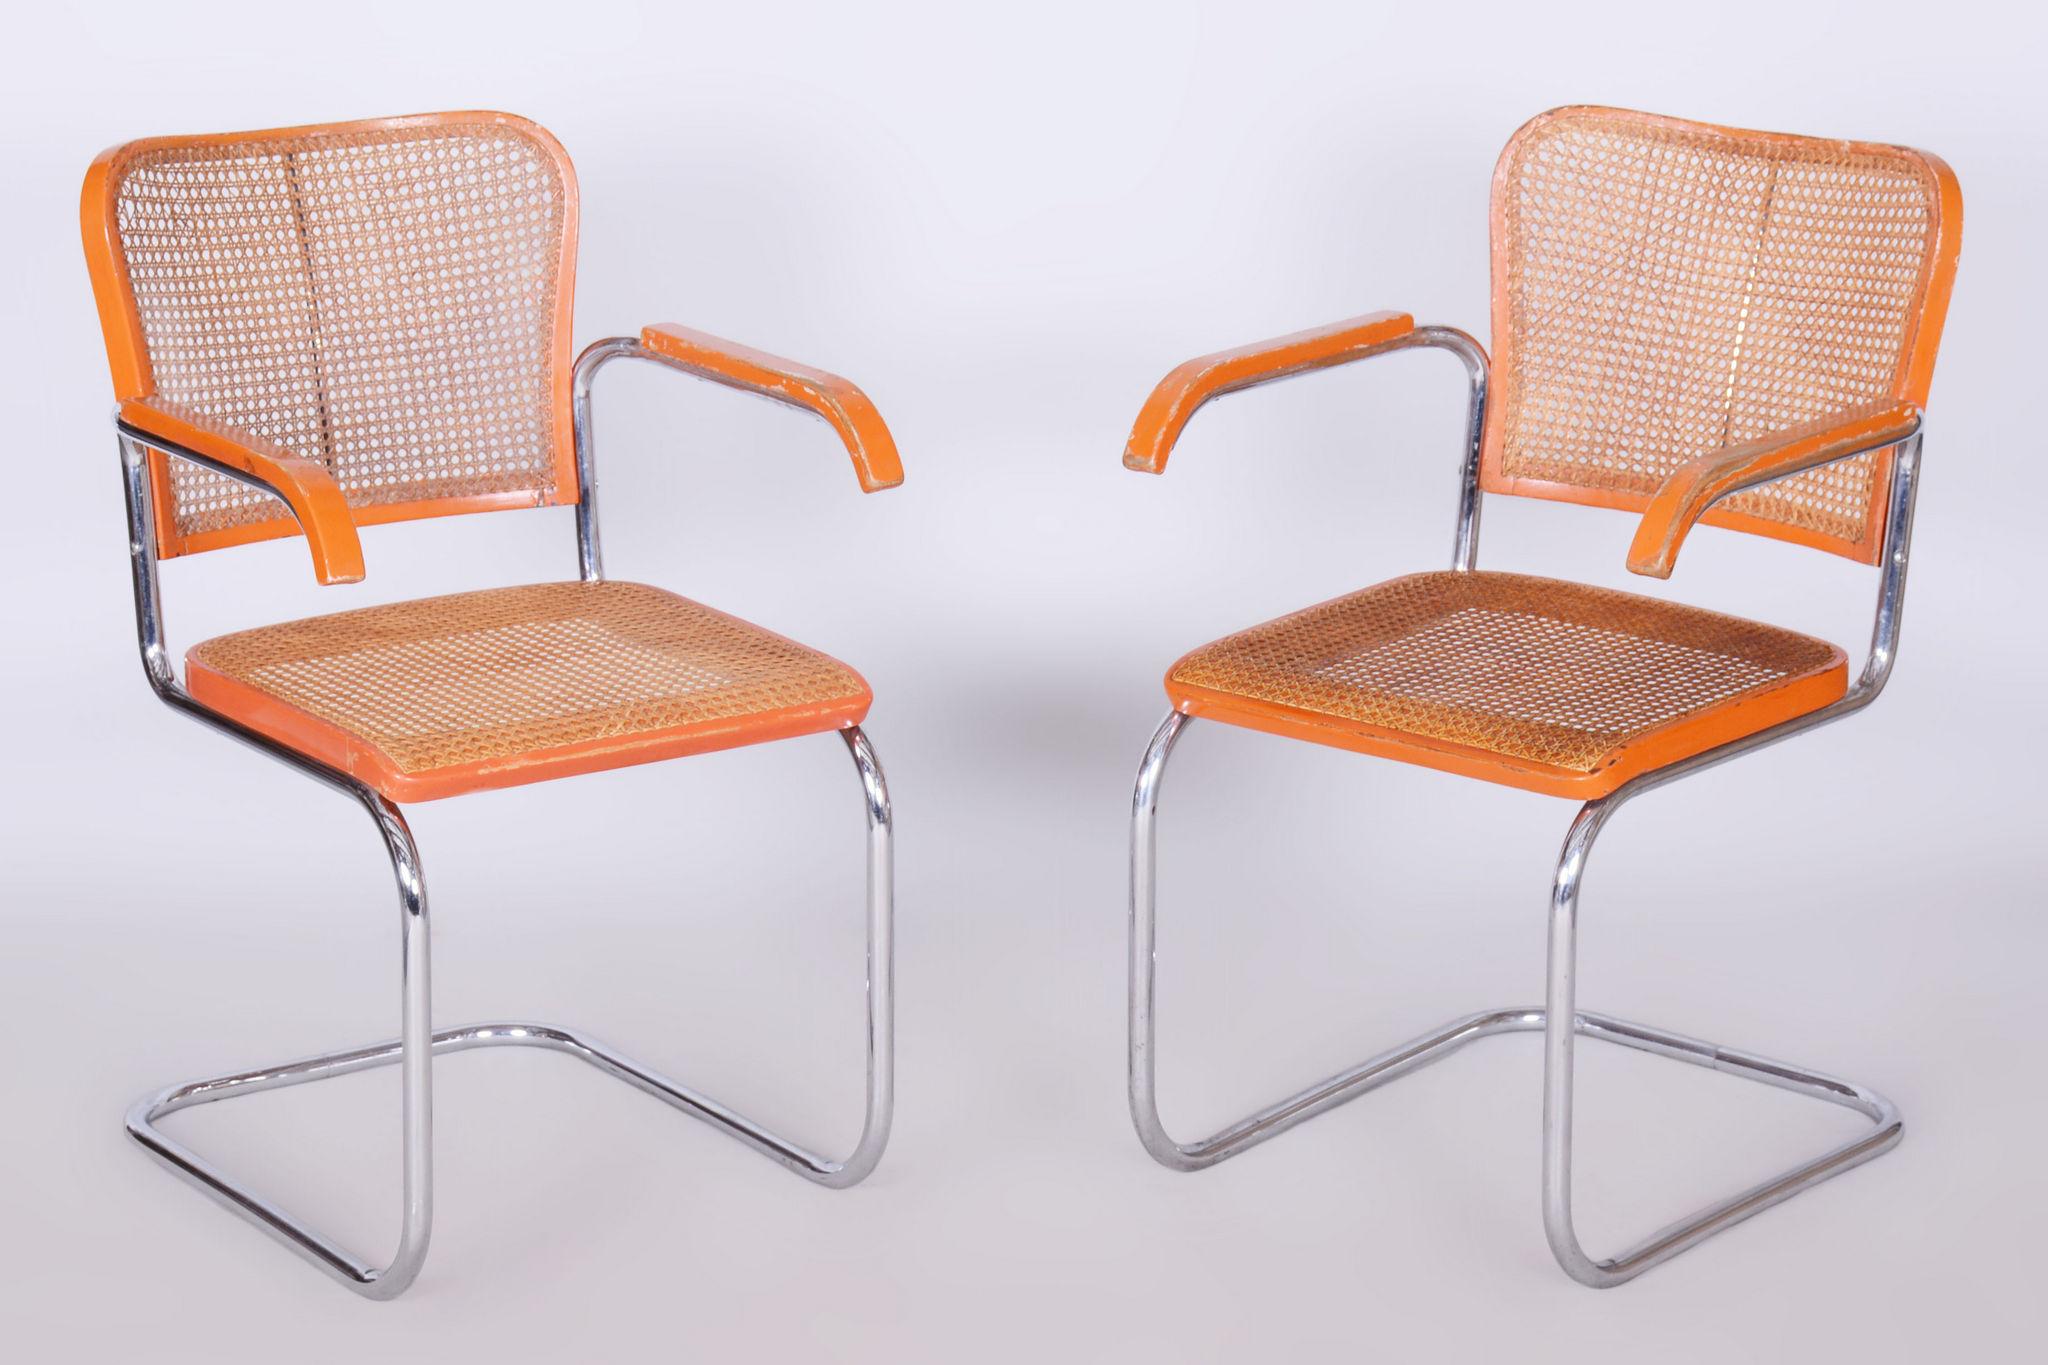 Ensemble de deux fauteuils Bauhaus en hêtre restauré.

Style : Bauhaus
Créateur : Robert Slezak
Période : 1930-1939
Source : Tchécoslovaquie
Matériau : Beeche, acier chromé, rotin.

En parfait état d'origine, l'objet a été nettoyé par des